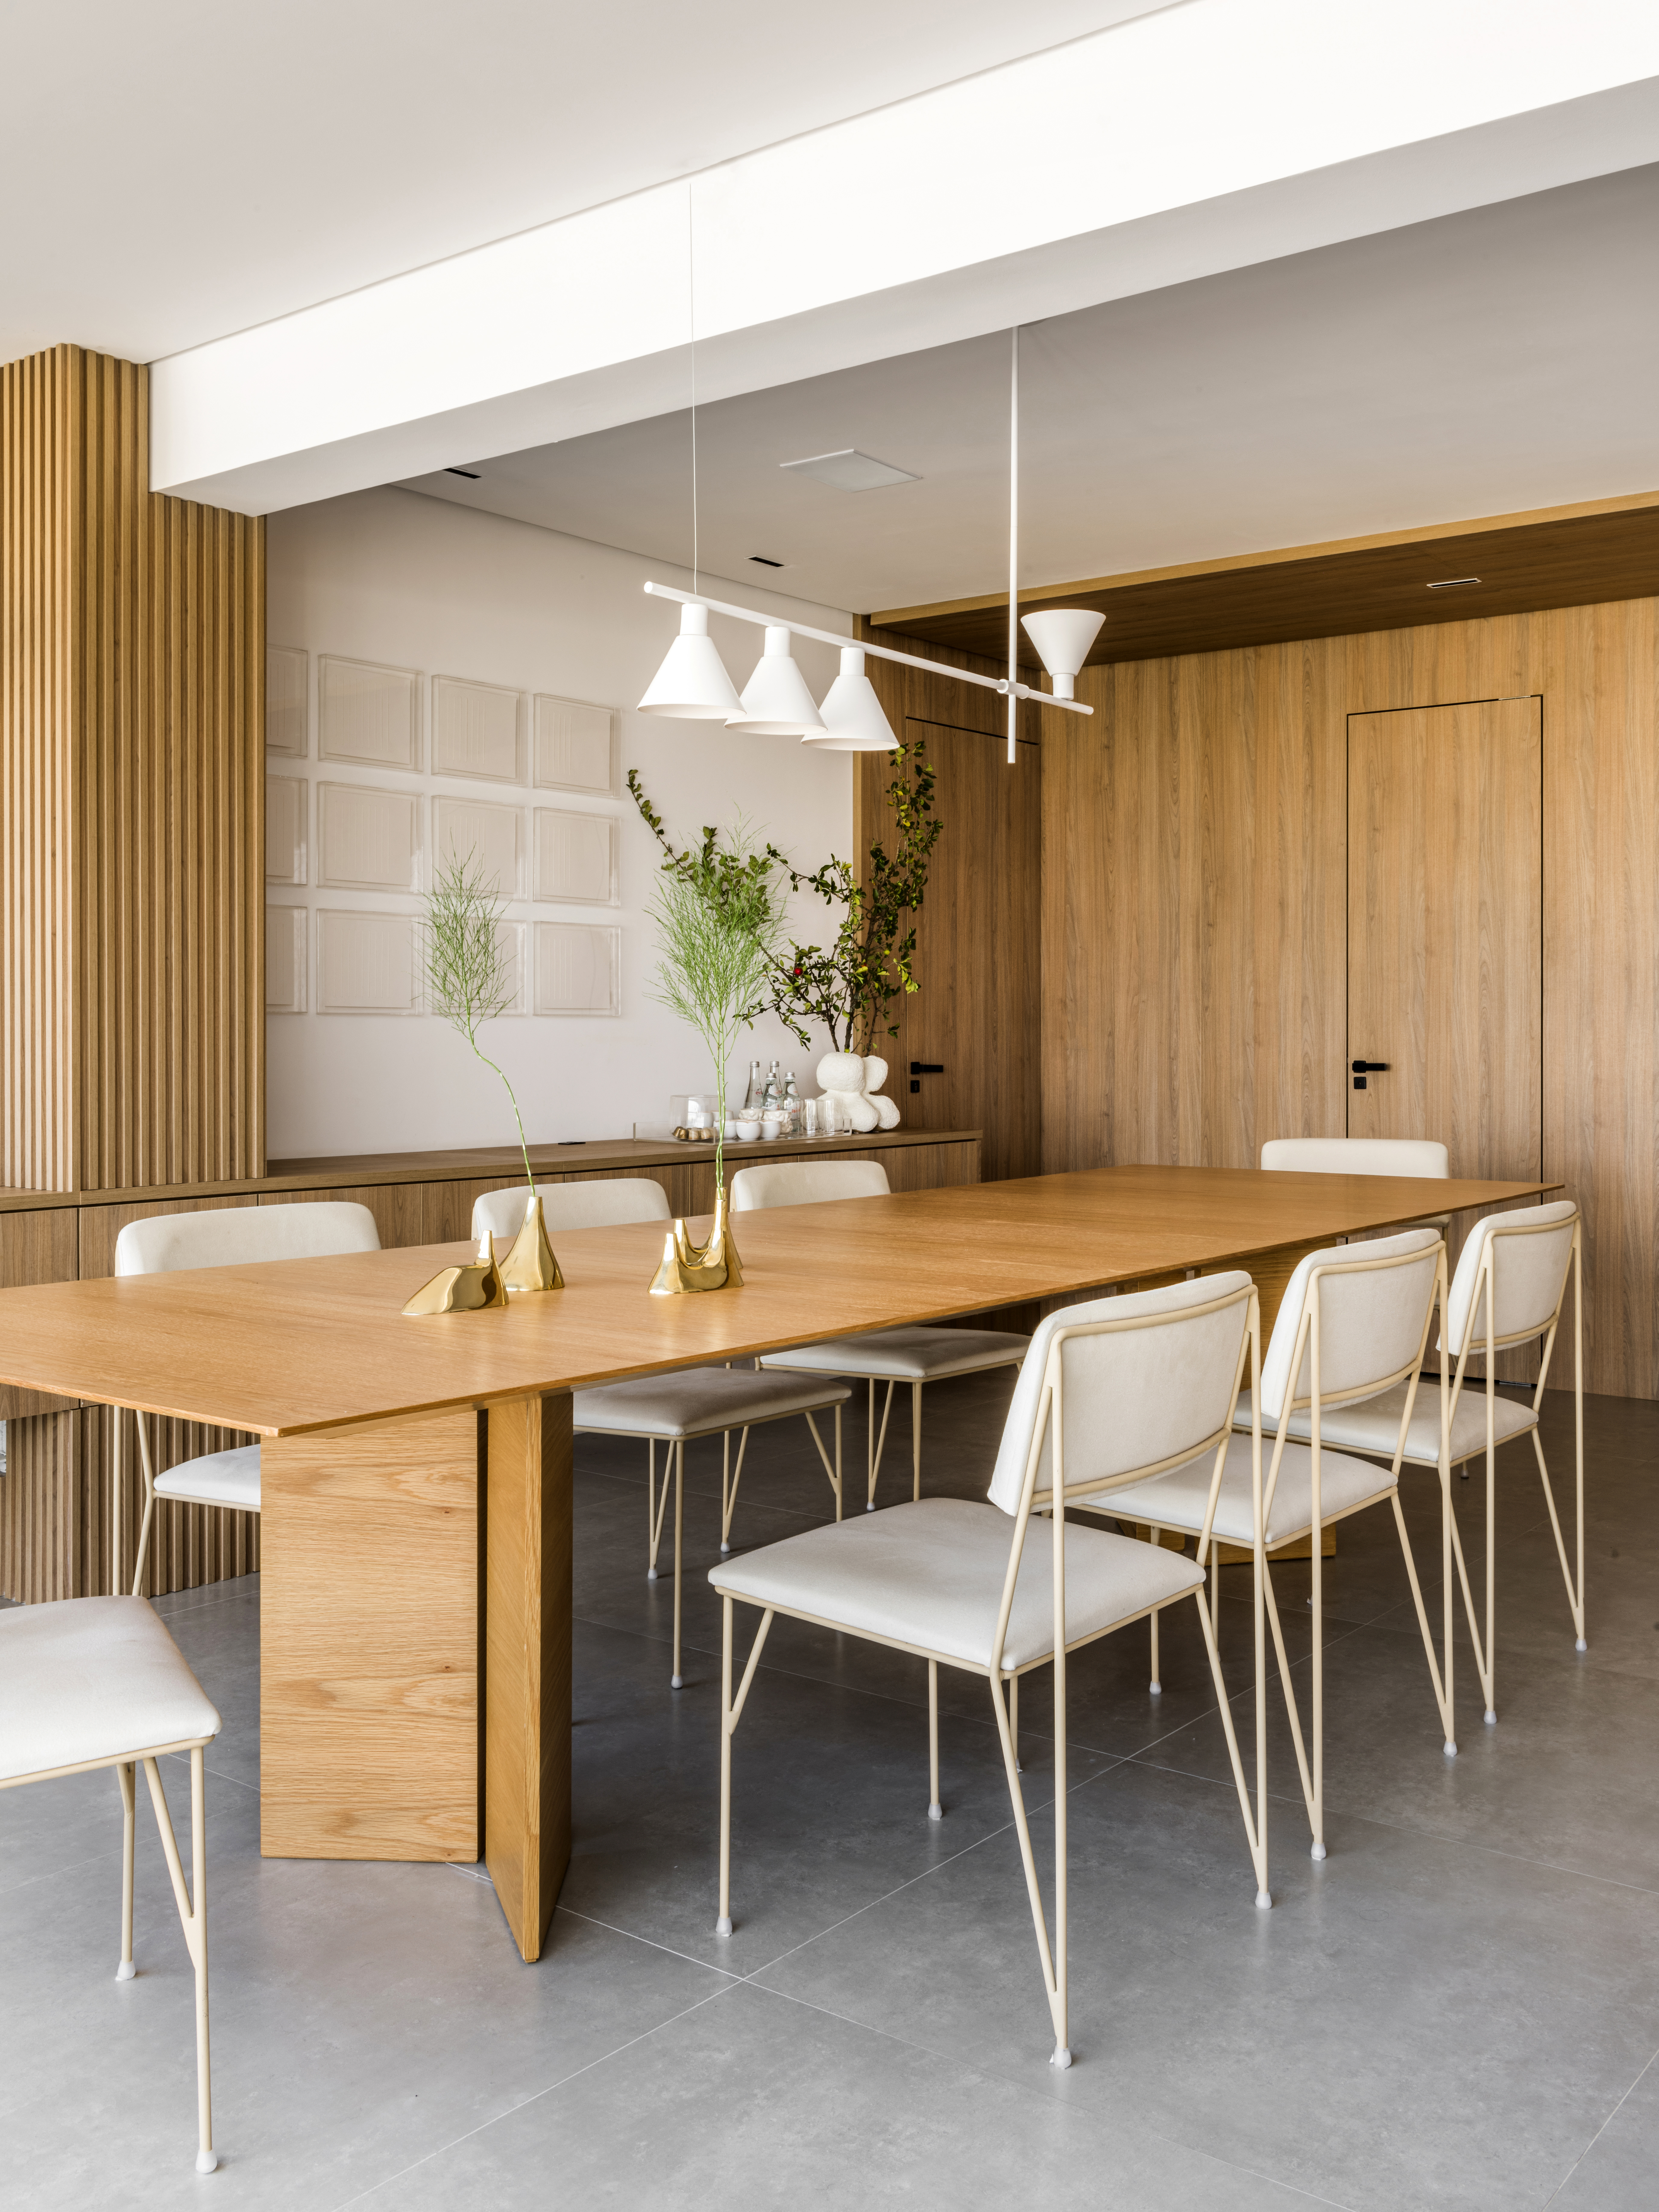 Projeto de Ticiane Lima. Na foto, sala de jantar com mesa de madeira, cadeiras com estofado branco, luminária e buffet de madeira.